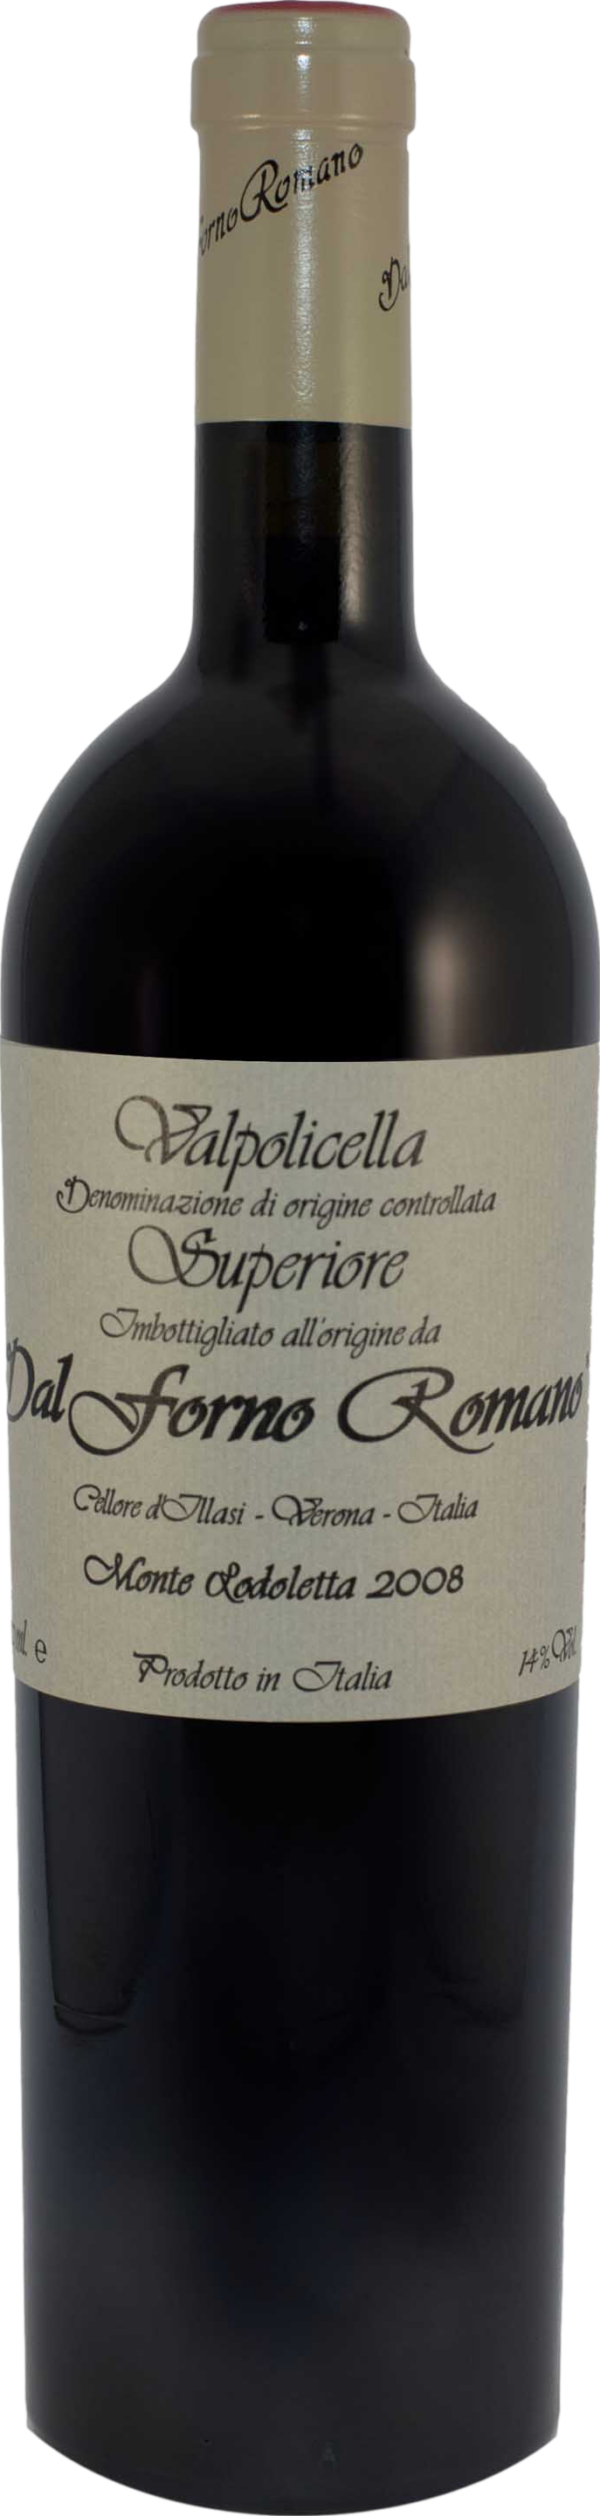 Product image of Dal Forno Romano Valpolicella Superiore Monte Lodoletta 2015 from 8wines